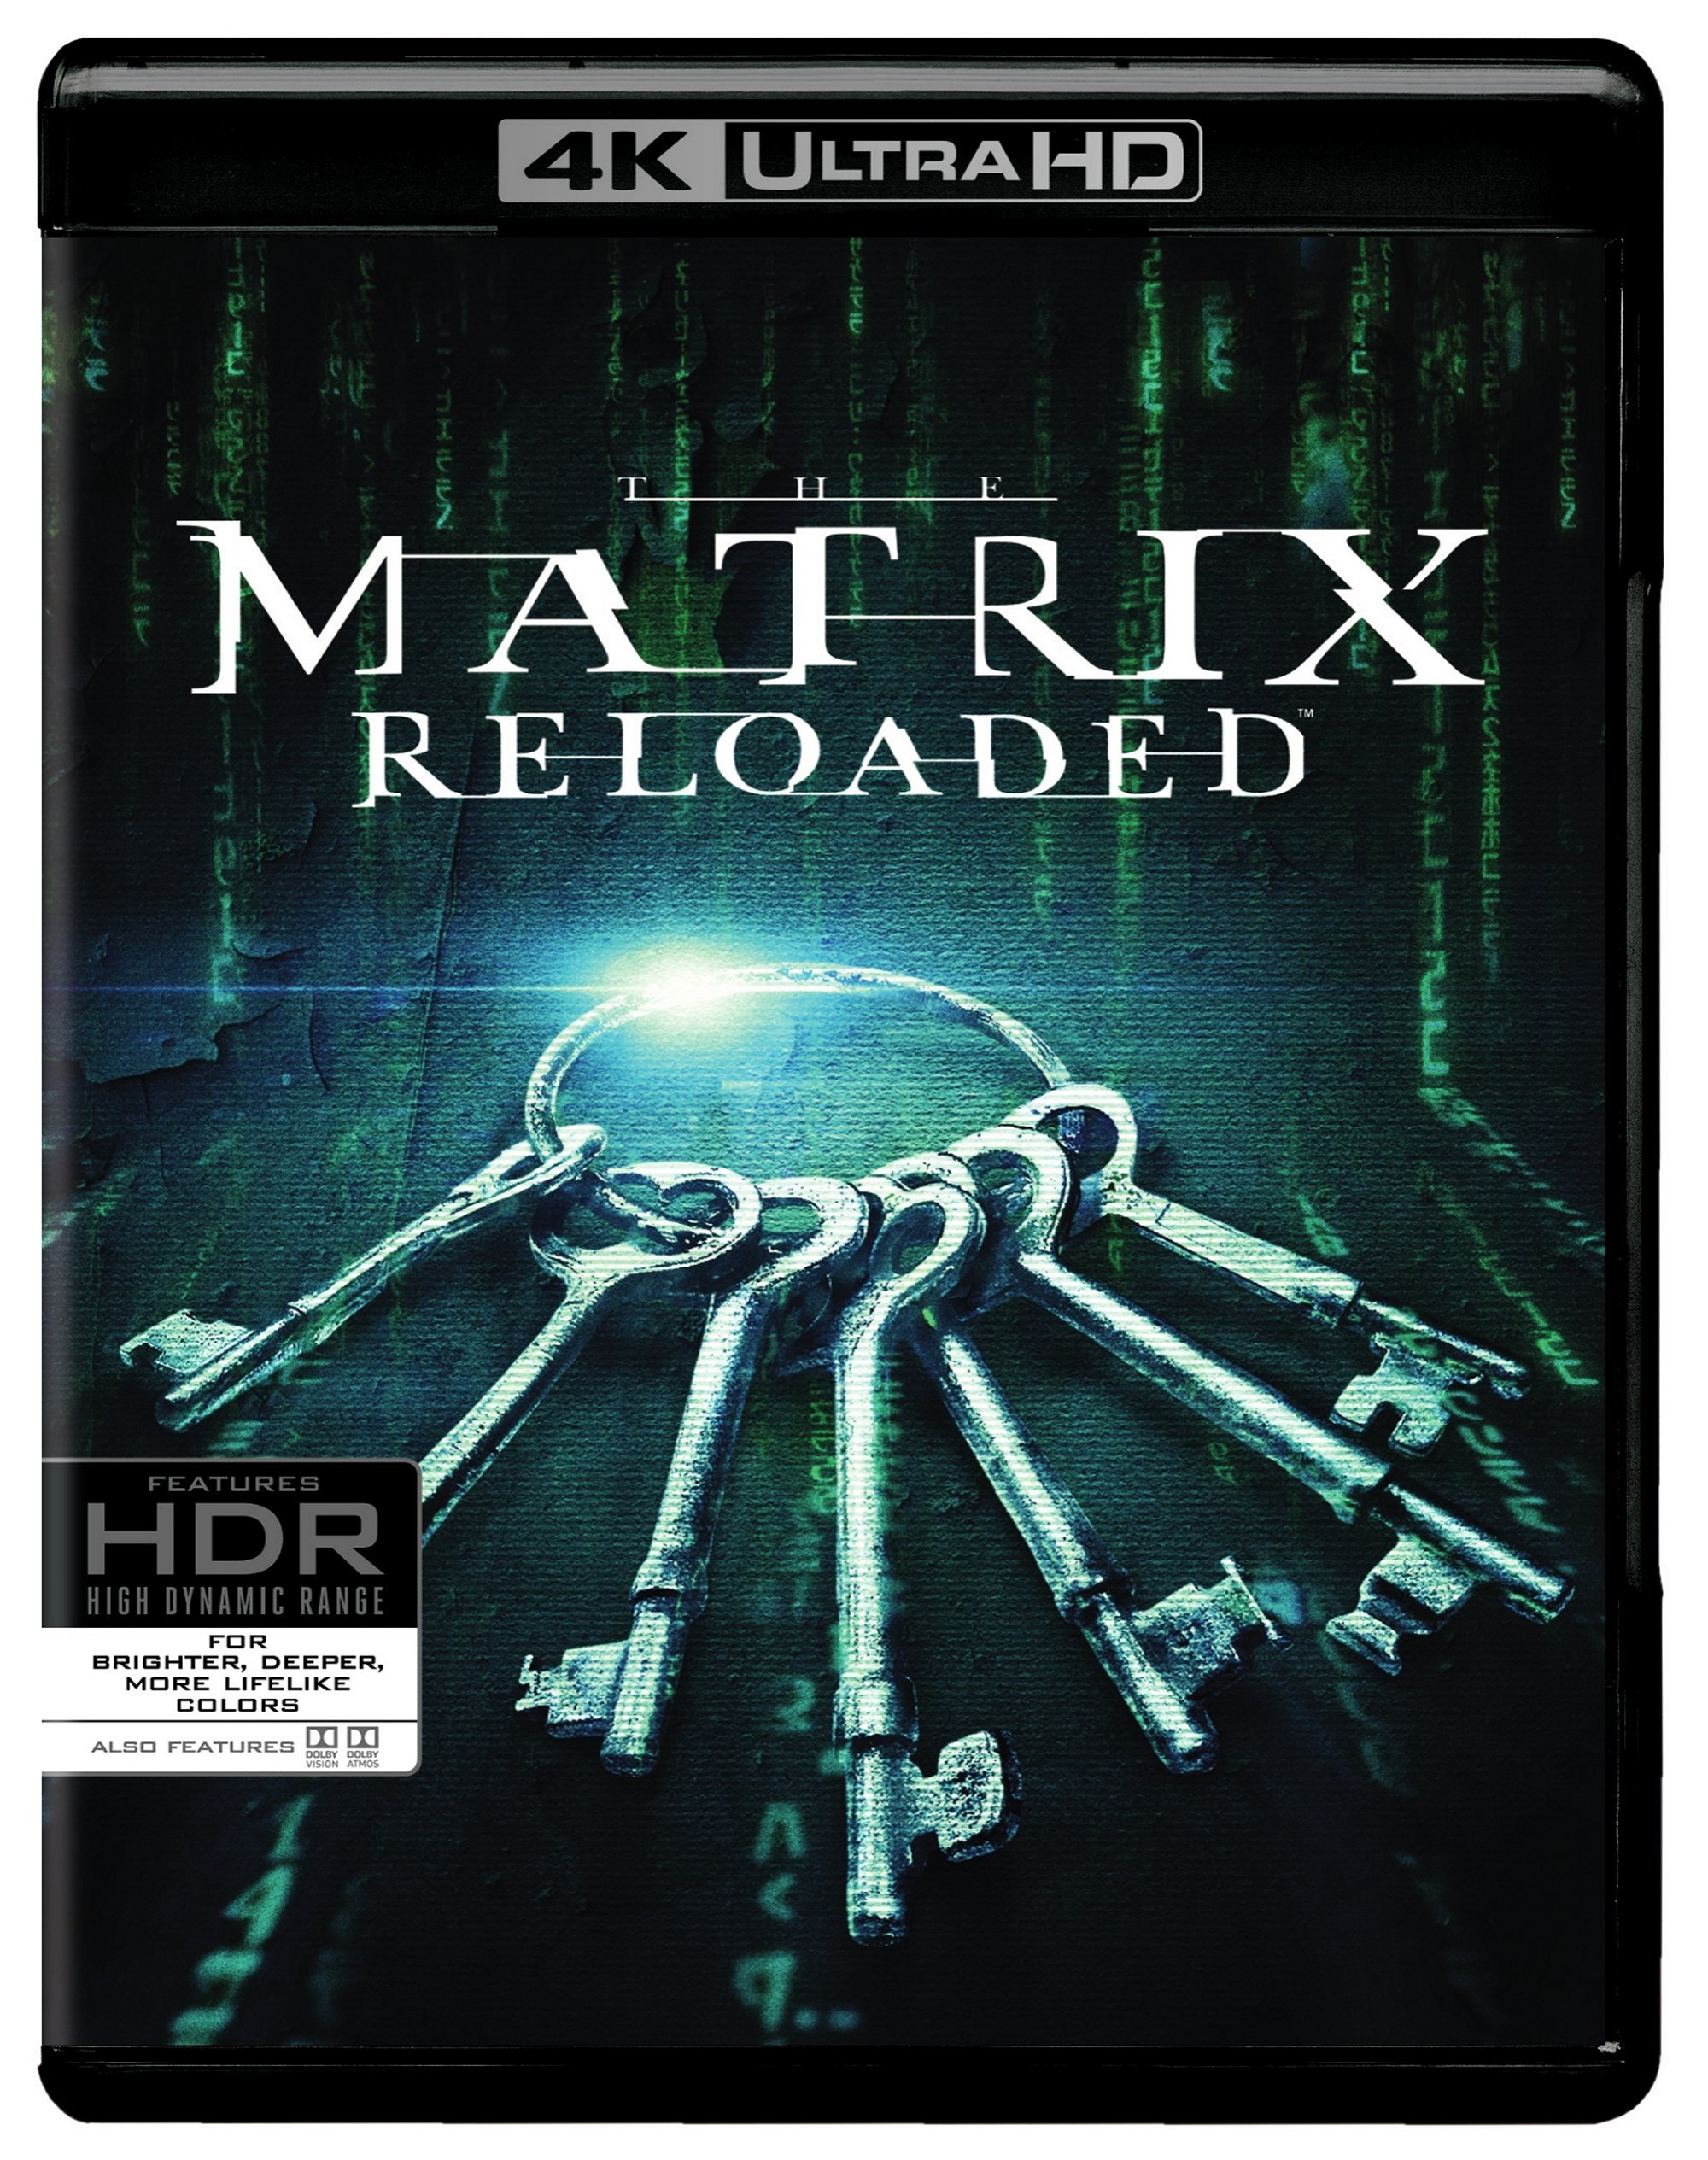 Matrix Reloaded (4K Ultra HD + Blu-ray) - UHD [ 2003 ]  - Sci Fi Movies On 4K Ultra HD Blu-ray - Movies On GRUV